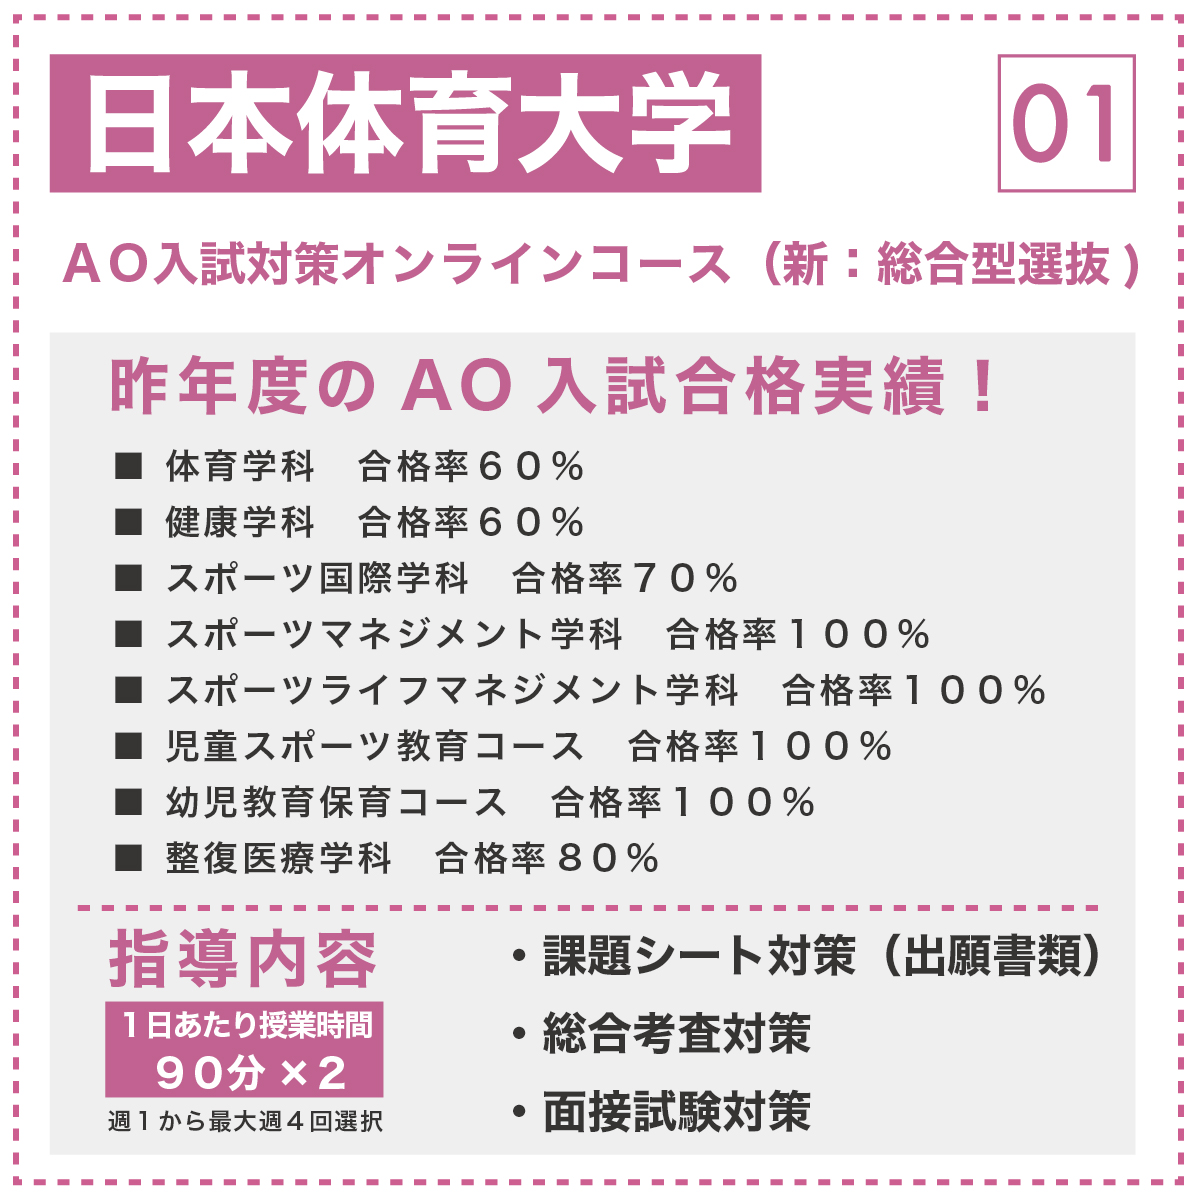 日本体育大学 AO入試対策オンラインコース(新:総合型選抜)